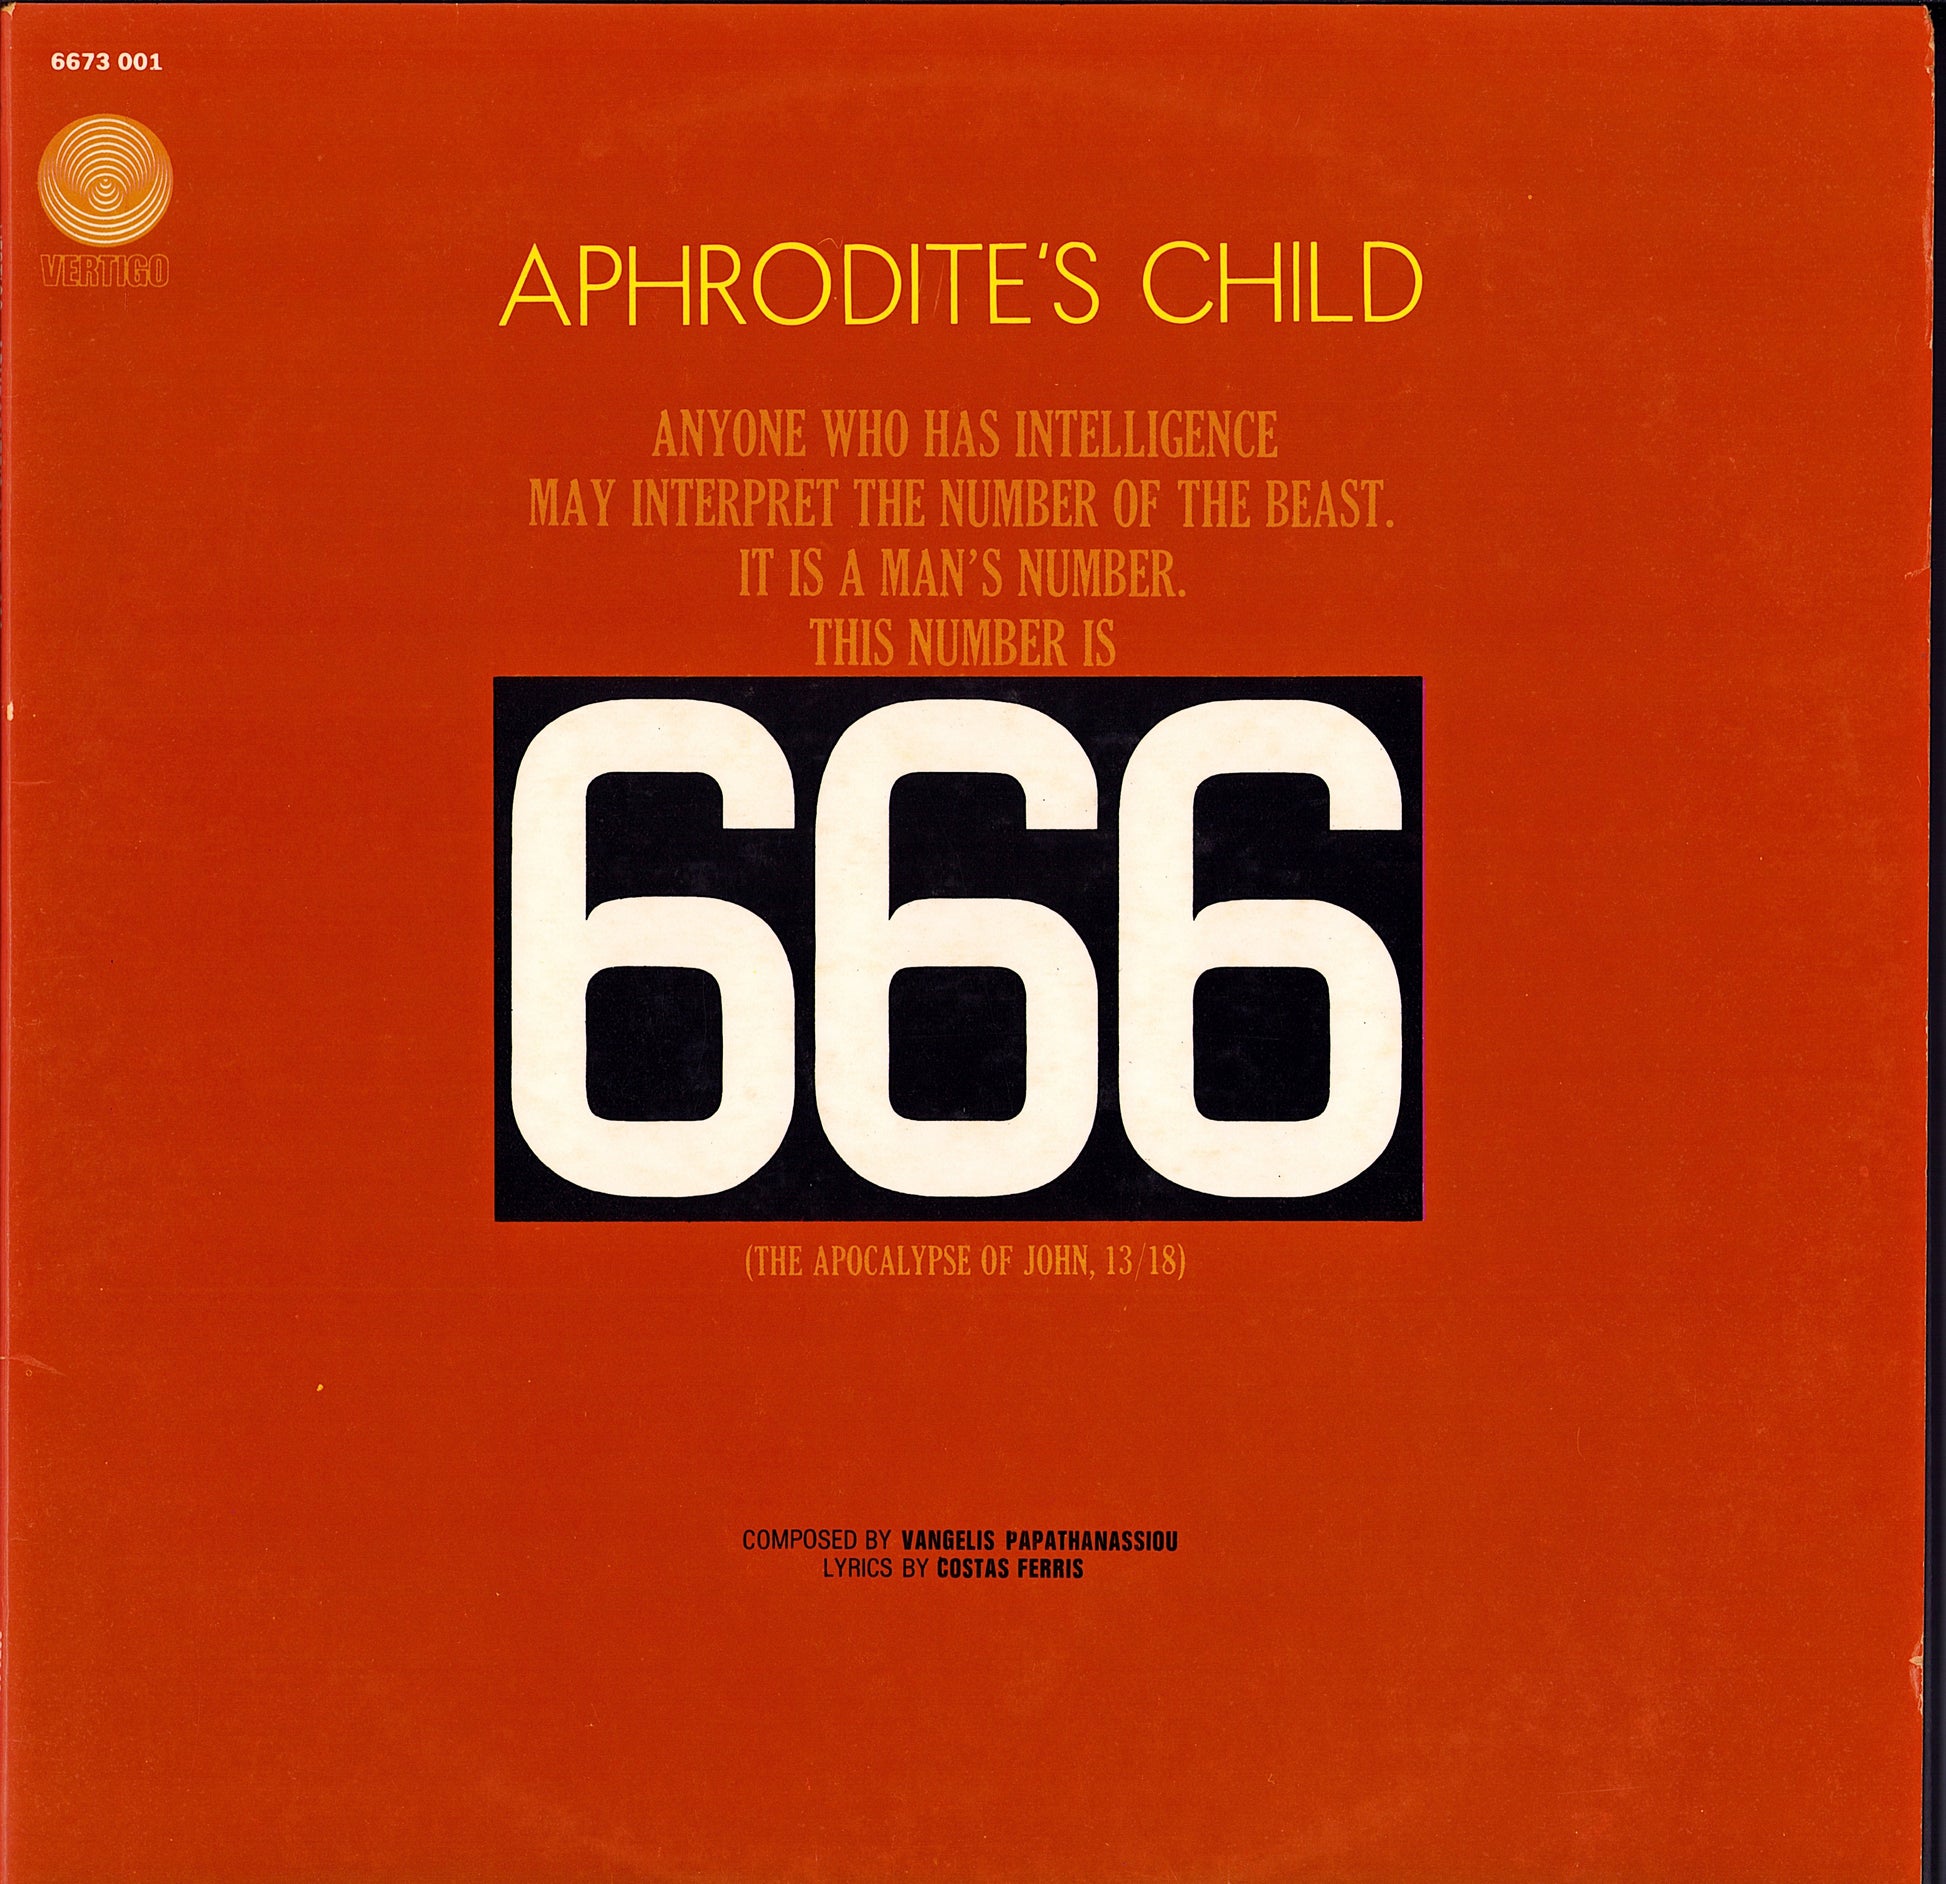 Aphrodite's Child - 666 Vinyl 2LP